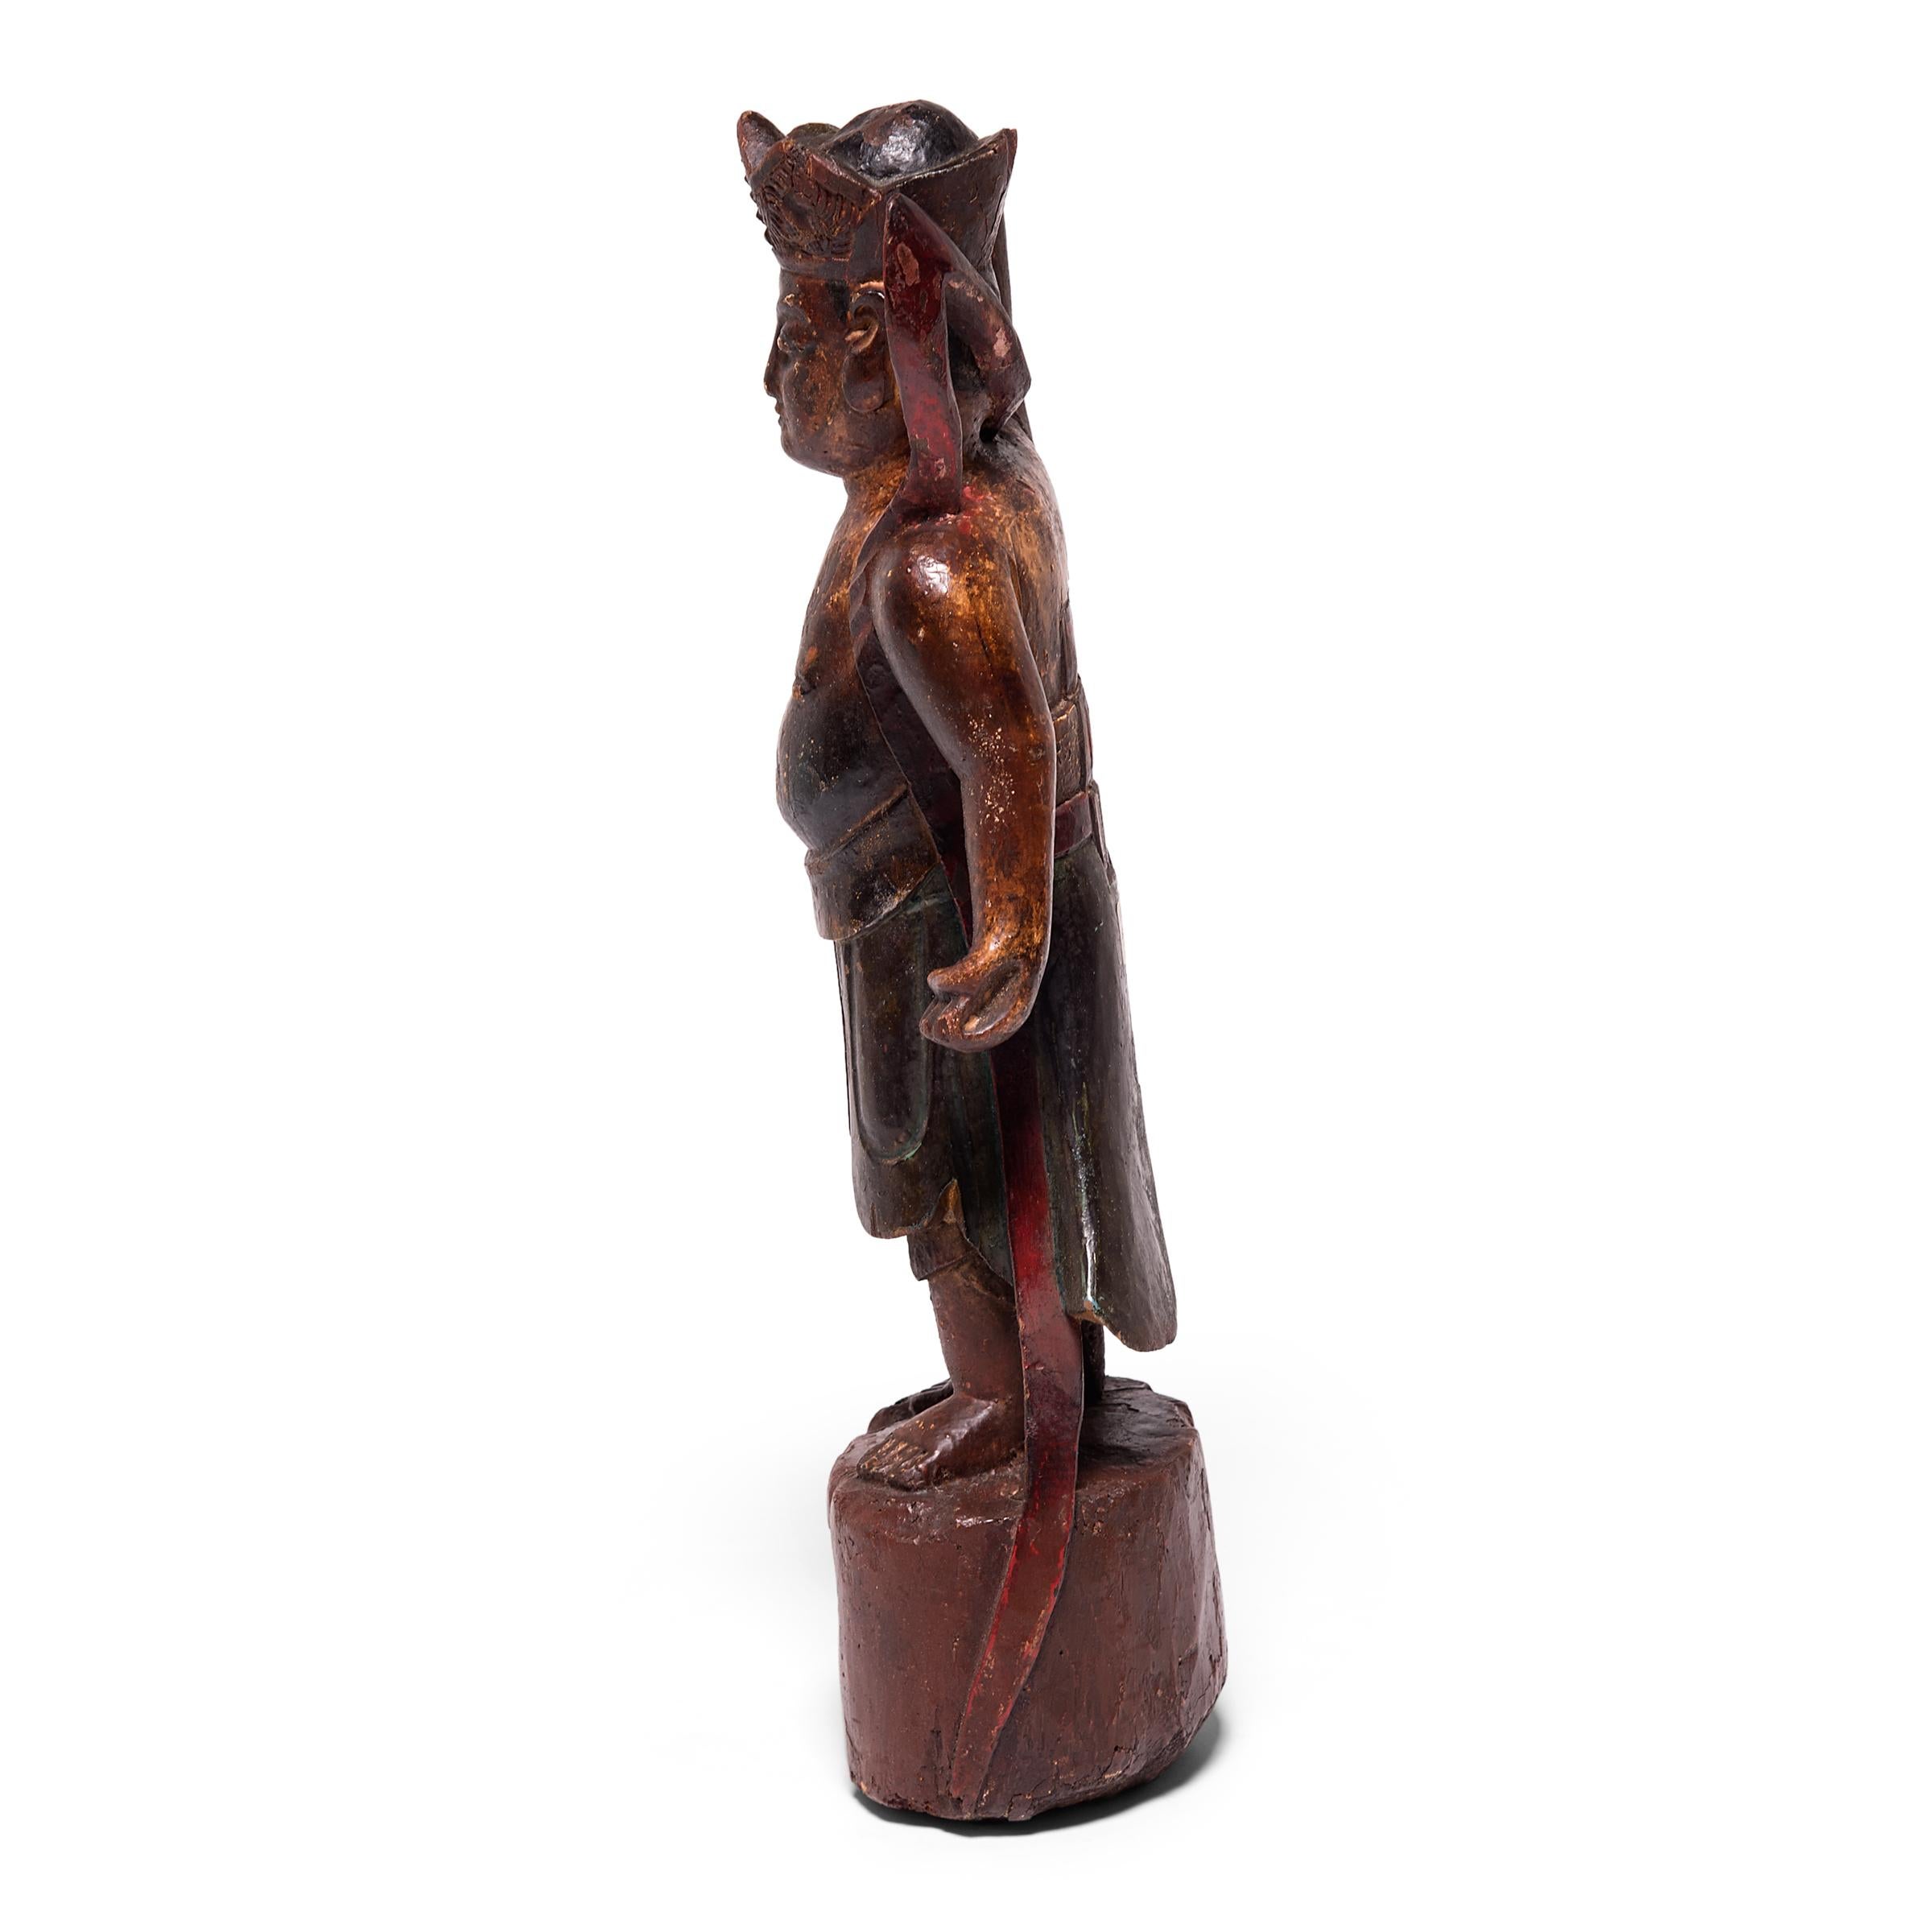 Sculptée à la main et peinte en couleurs vives, cette figure d'esprit mythique du XIXe siècle était autrefois placée sur une table d'autel traditionnelle pour rendre hommage aux ancêtres du passé. La figure est sculptée avec des robes détaillées, un